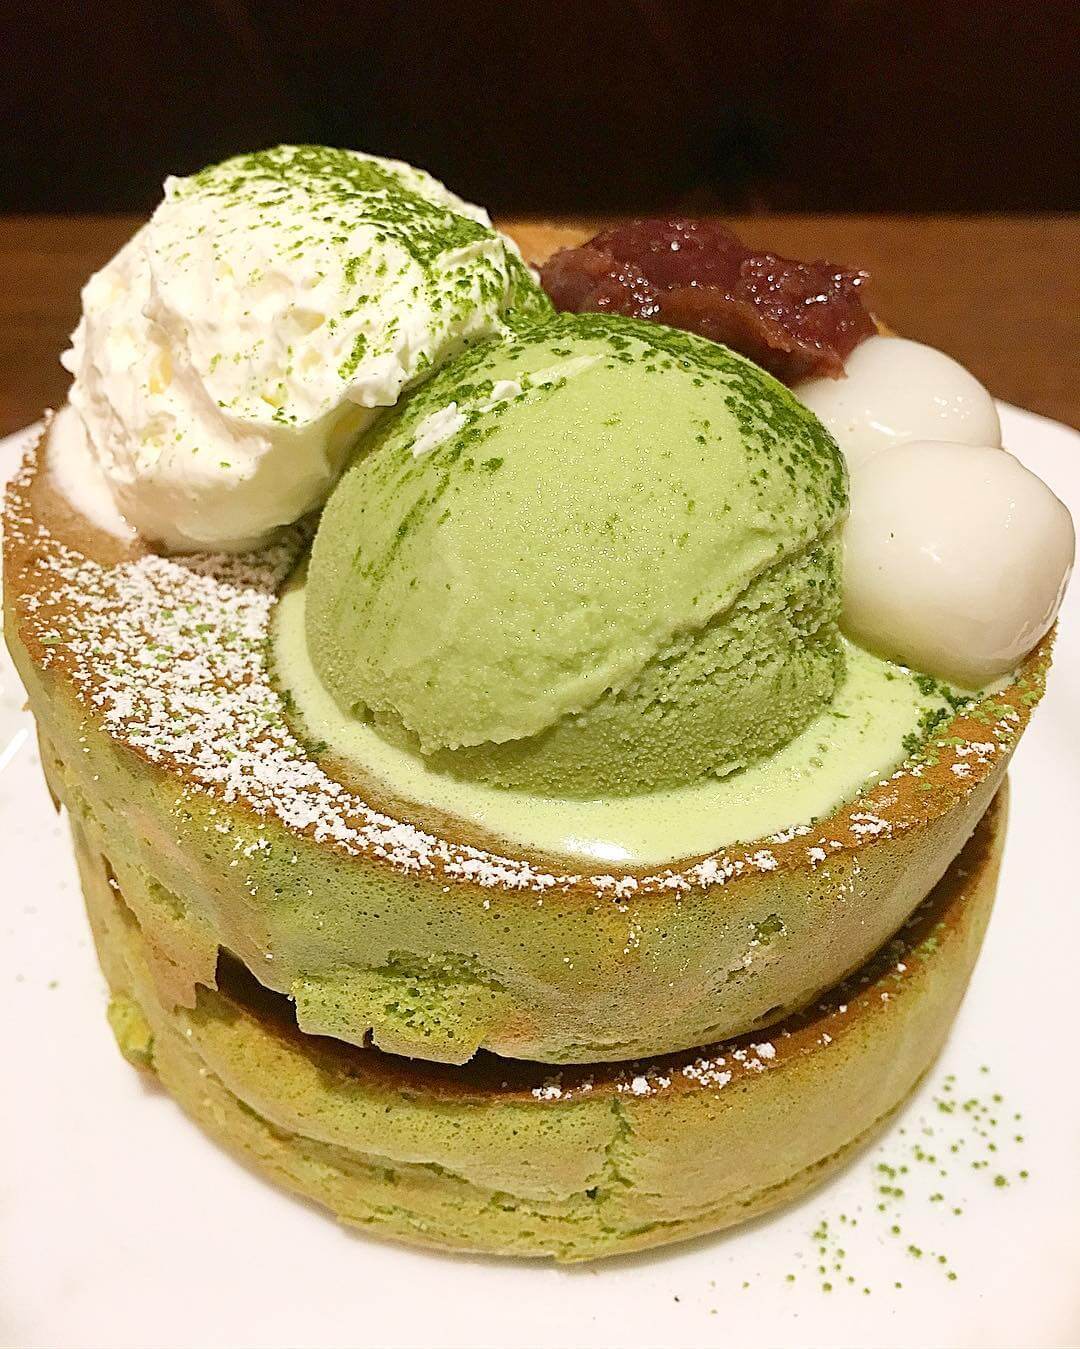 Matcha Fluffy Pancakes at Hoshino Coffee